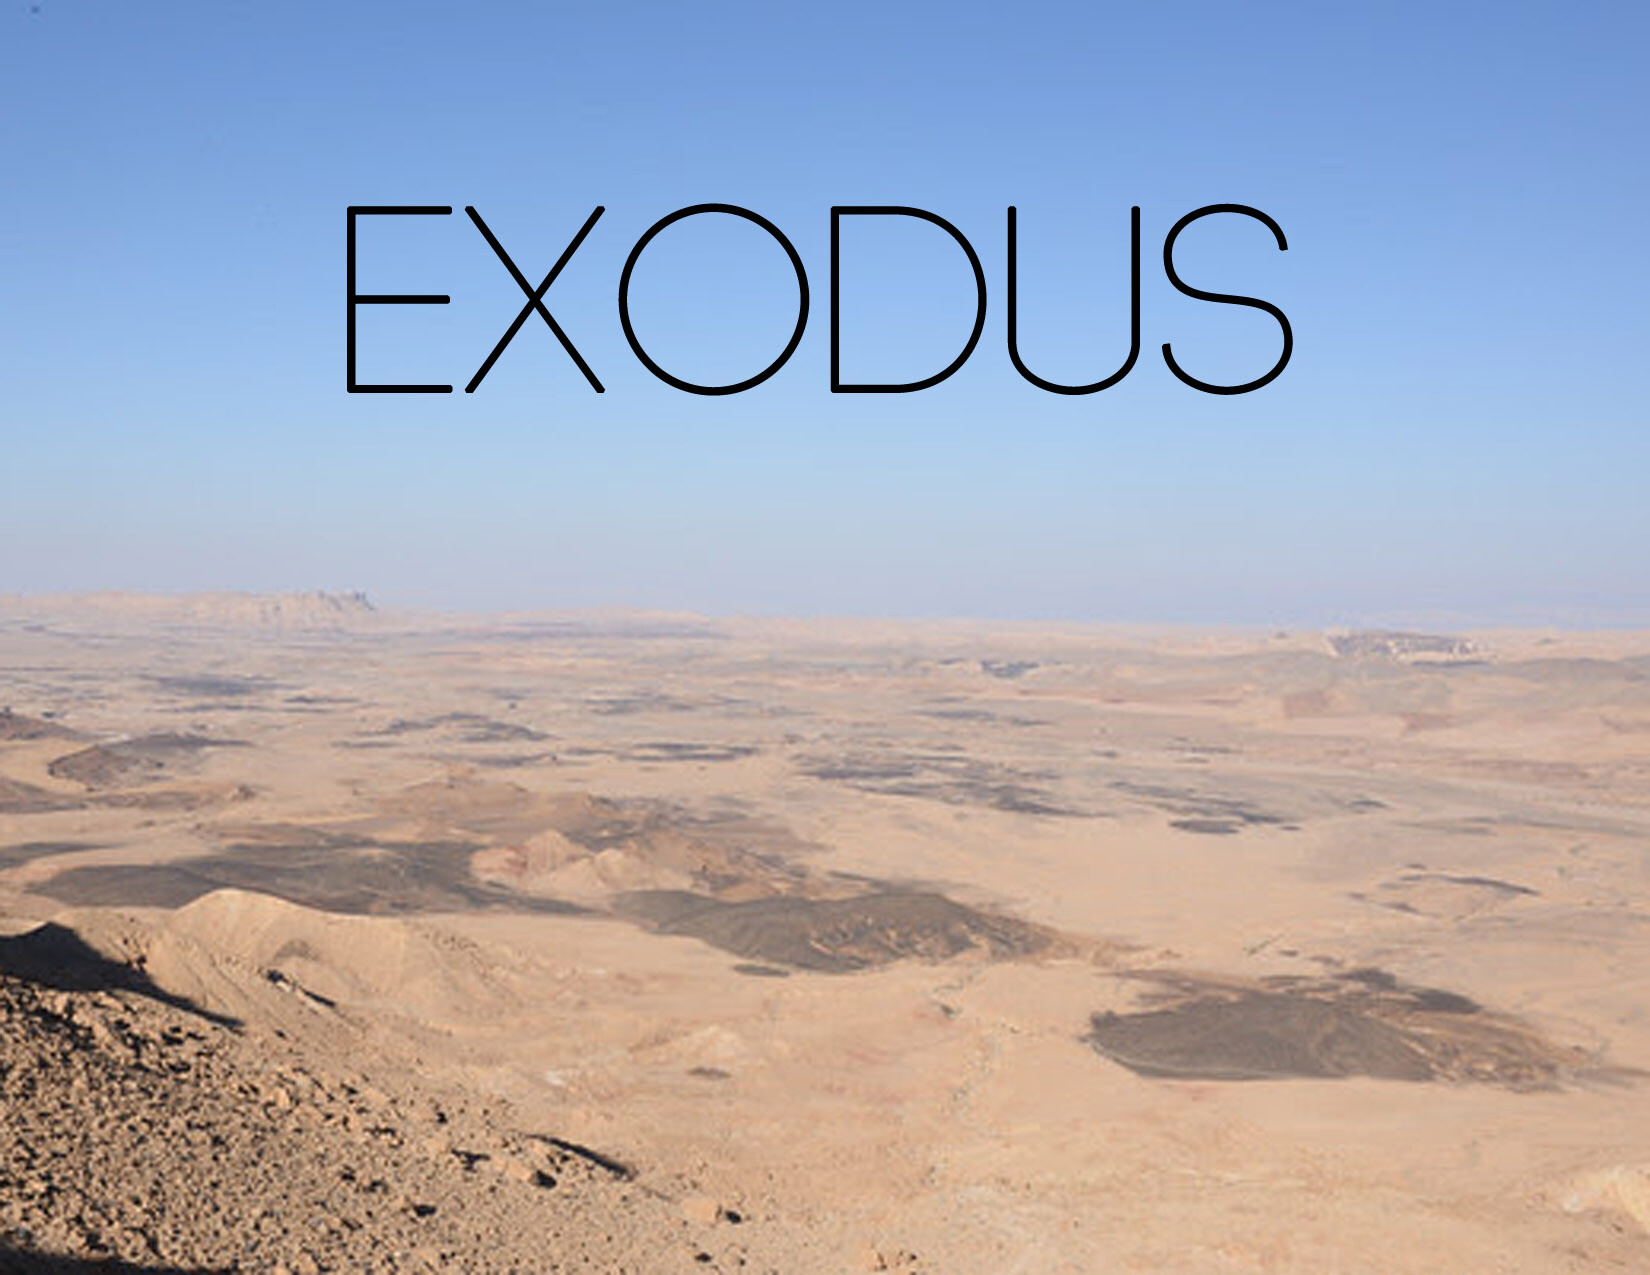 Exodus 25